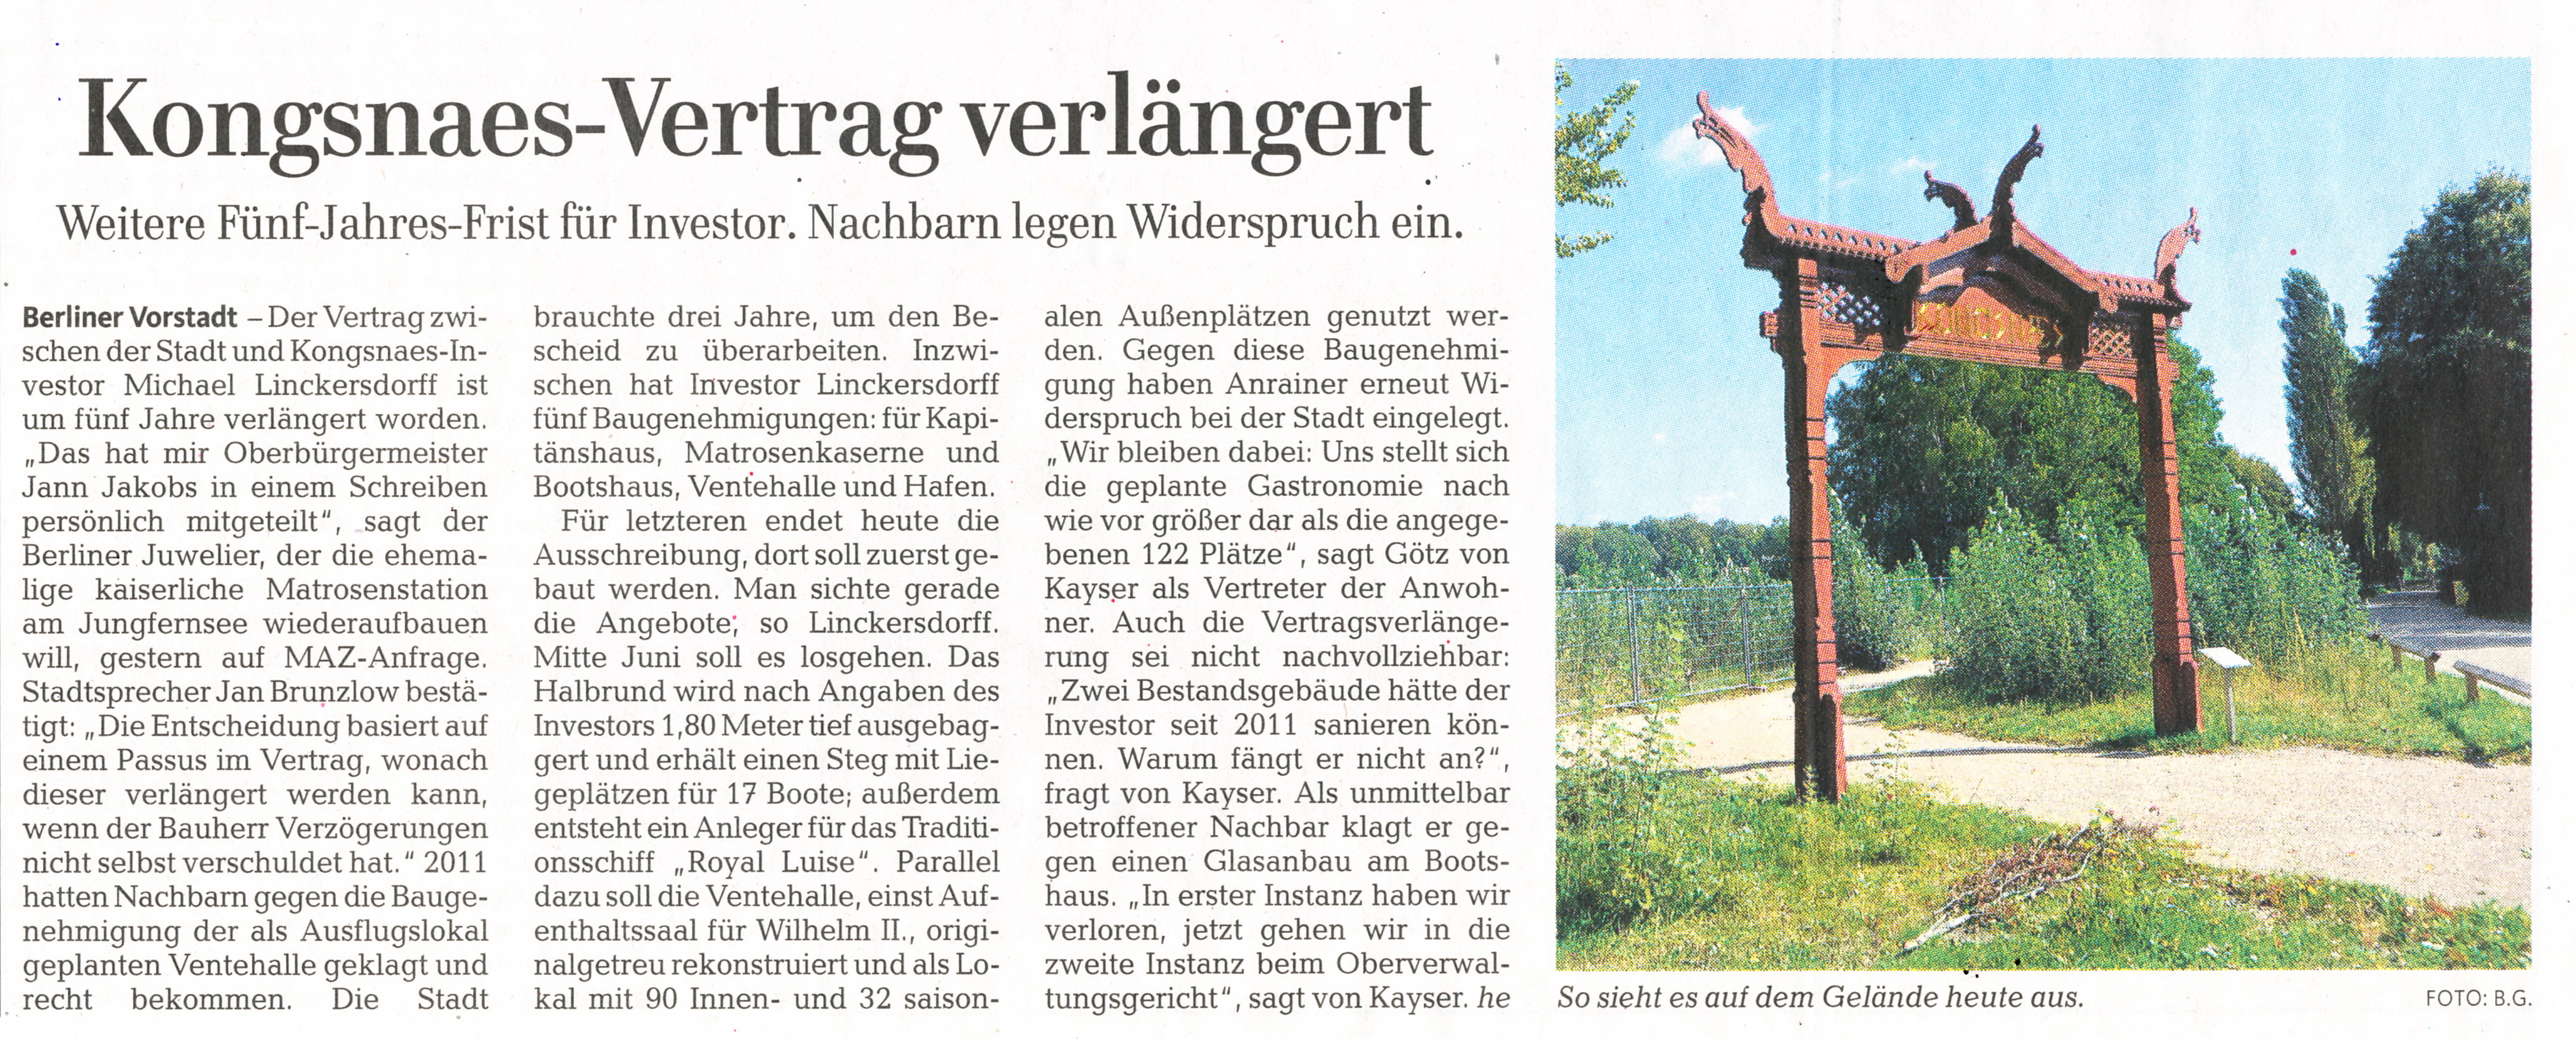 Mrkische Allgemeine Zeitung - 15.05.2014